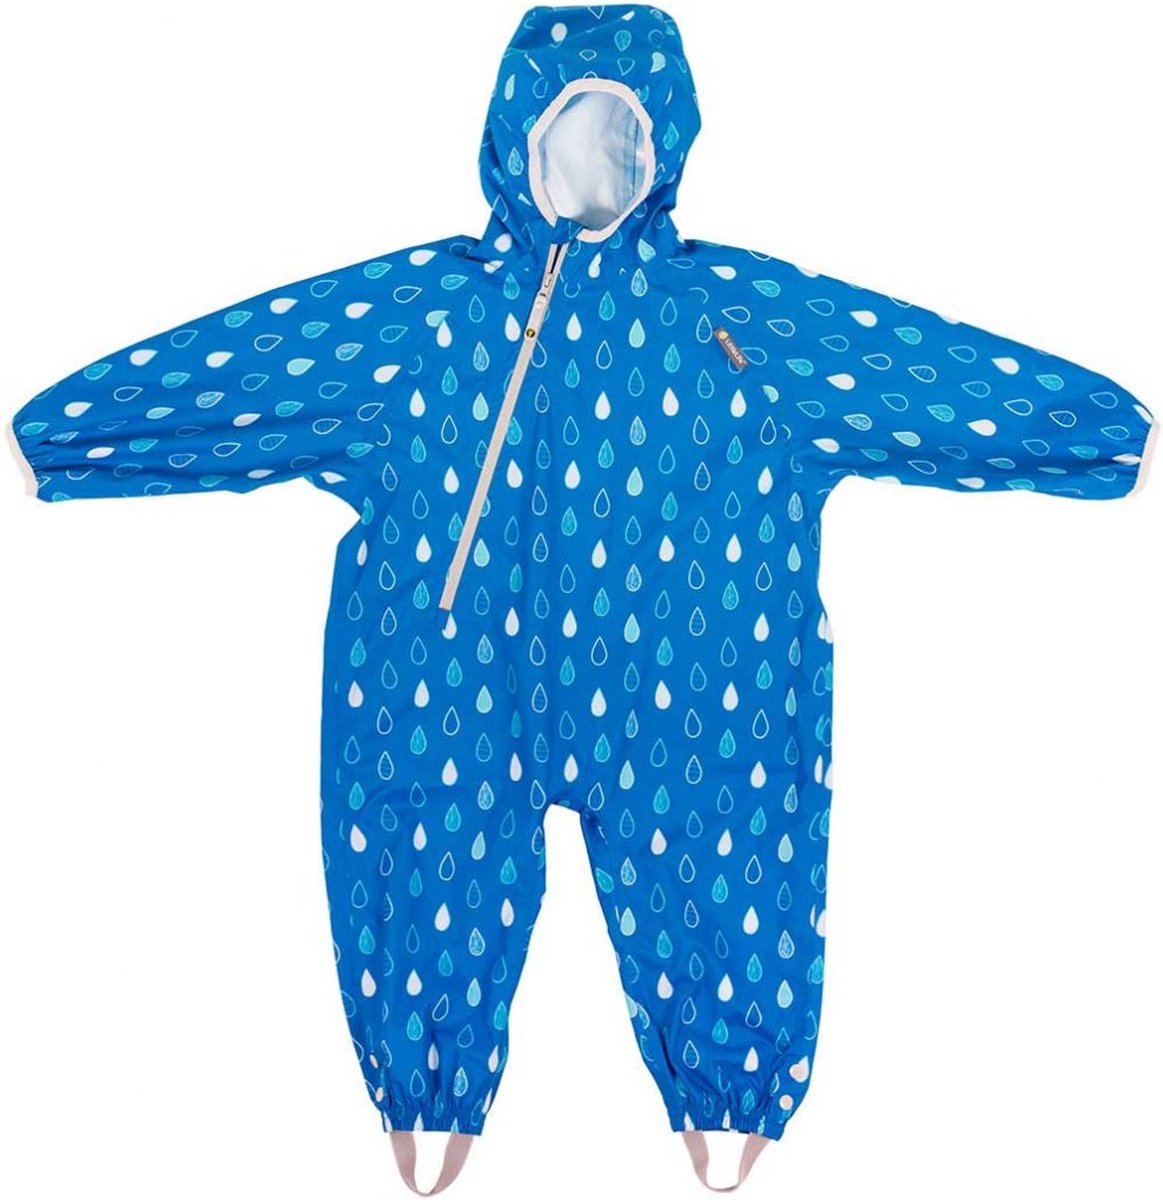 Lifemarque - Waterdichte all-in-one pak voor kinderen - Blauw - Regendruppels - Littlelife - maat M (12-18M)